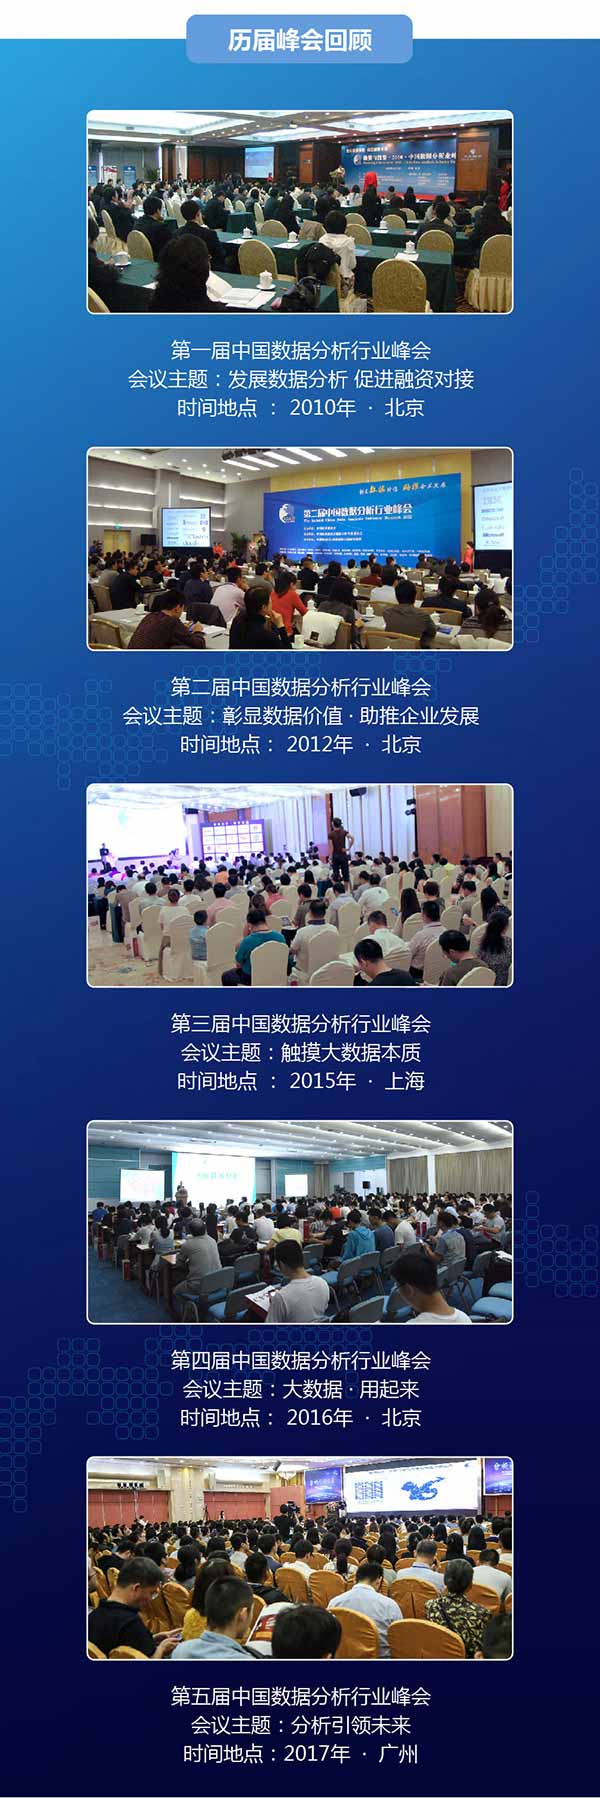 2018 大数据应用与融合创新大会暨第六届中国数据分析行业峰会_大数据峰会